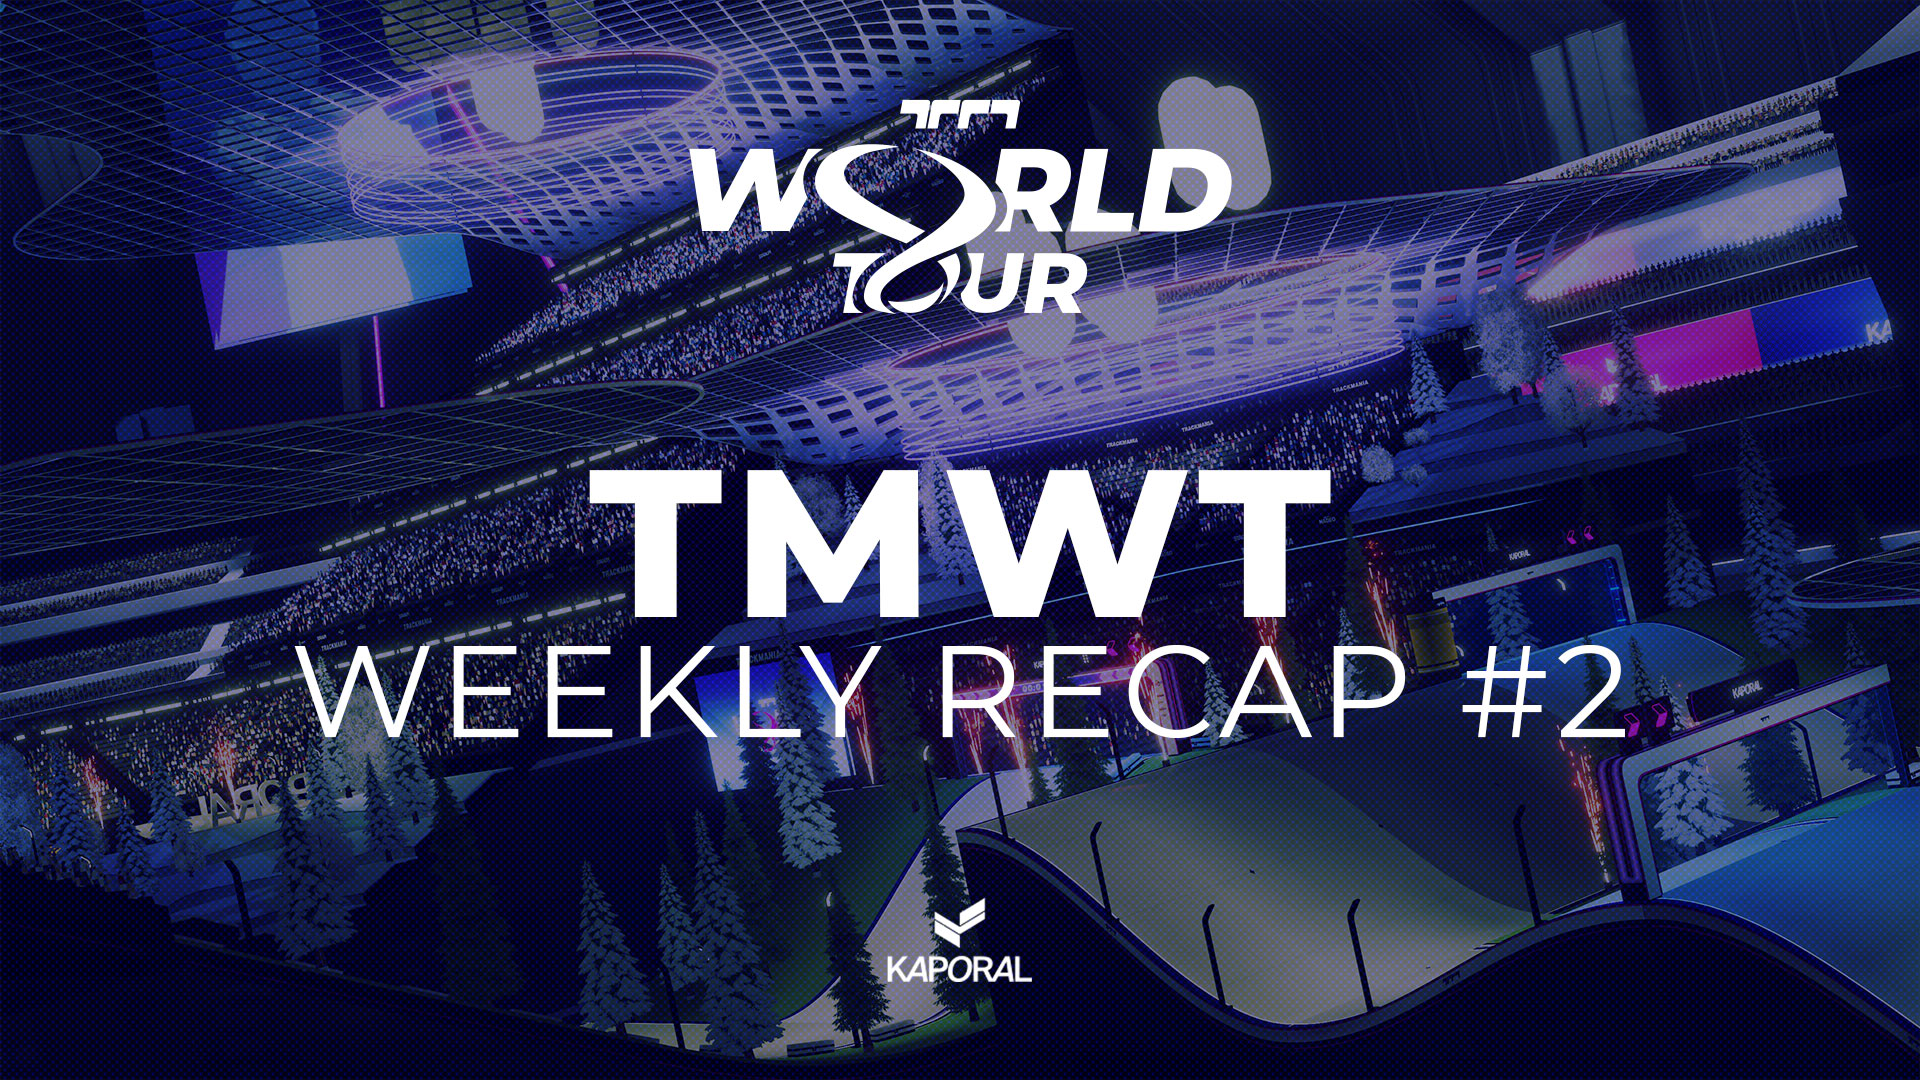 TMWT Stage 1 Weekly Recap #2